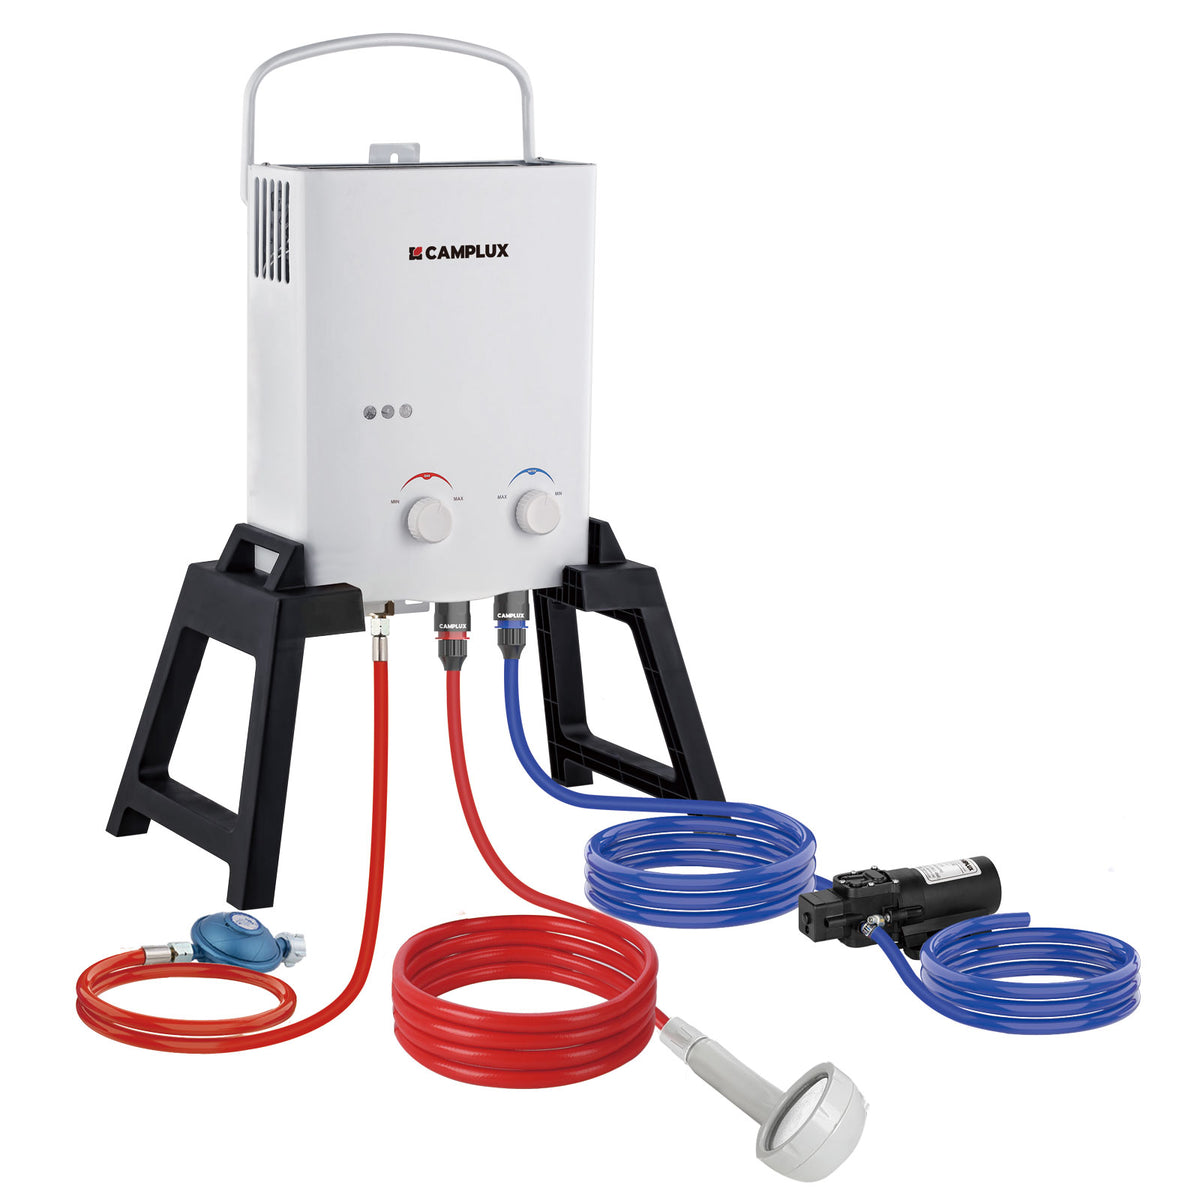 CAMPLUX 5 Liter Gasdurchlauferhitzer mit Stütz & Wasserpumpe, LPG, 50mbar, für Campingdusche/ Wohnmobilausflug, AY132Max-DE mit Tragetasche